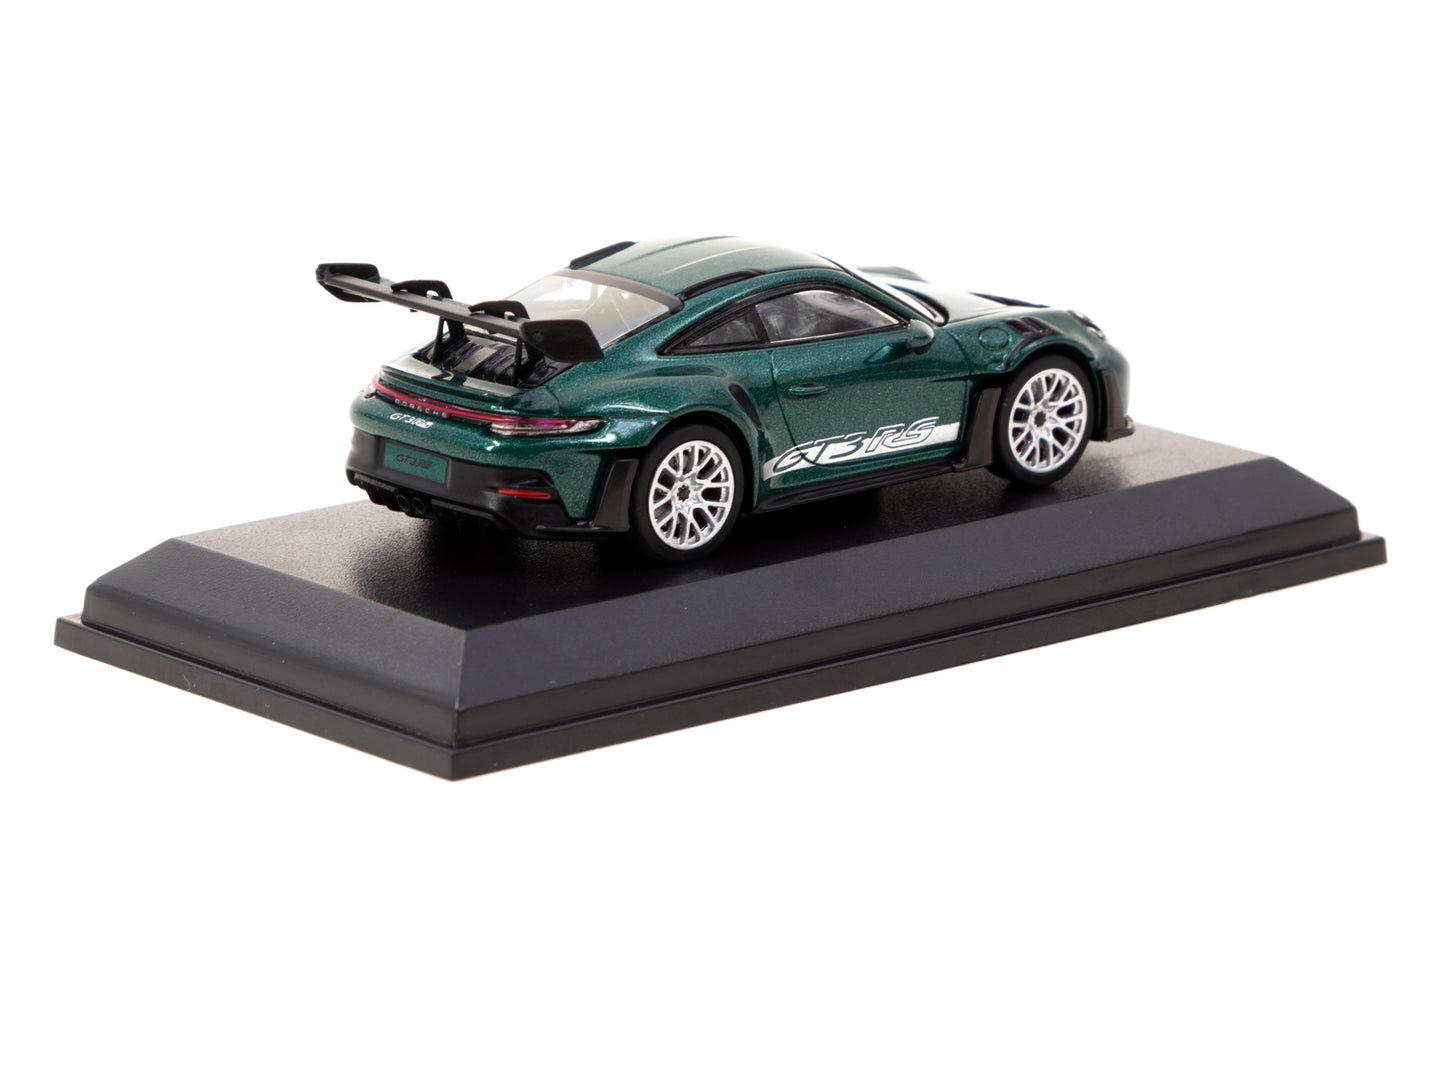 Tarmac Works x Minichamps 1/64 Porsche 911 (992) GT3 RS Porsche Racing Green Metallic